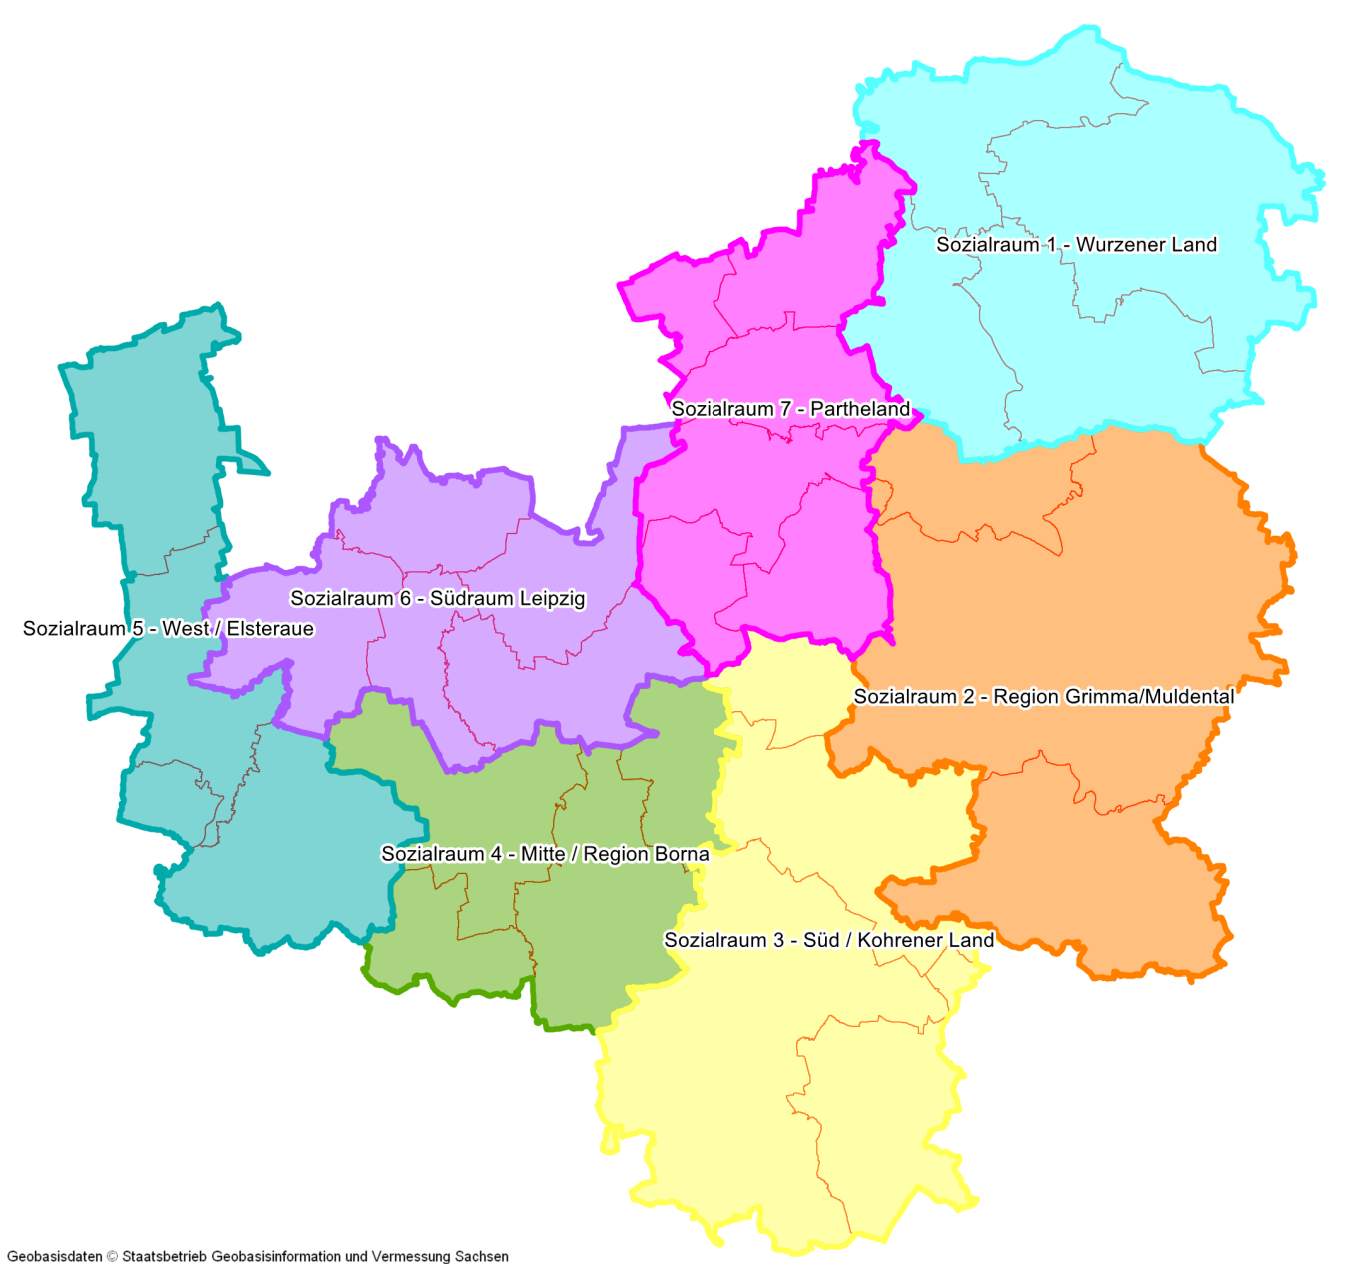 Die Abbildung zeigt die sieben Sozialräume farblich abgegrenzt in Form einer Landkarte